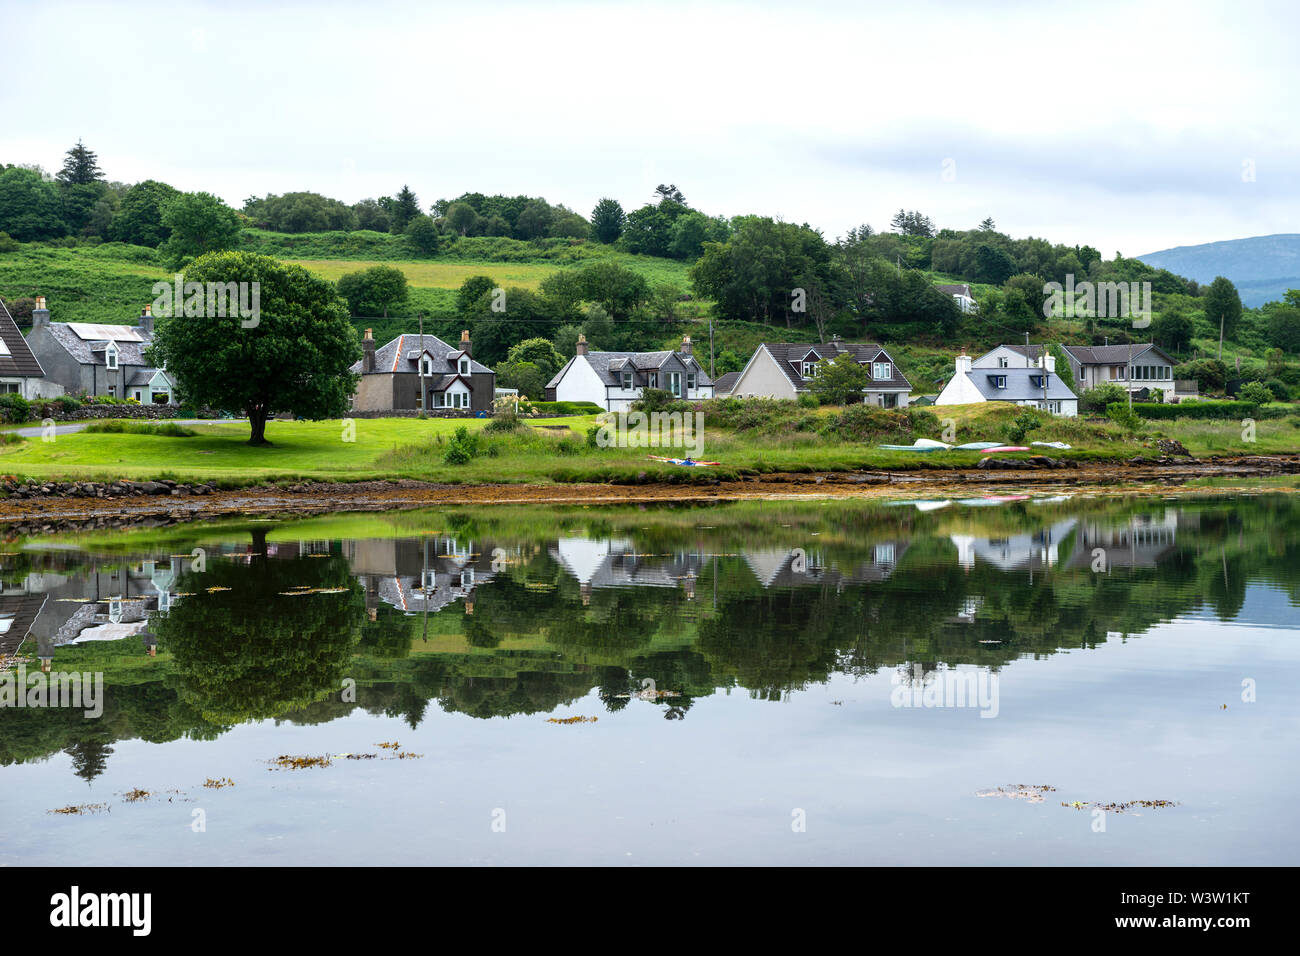 Am frühen Morgen Blick auf Meer Häuser in den ruhigen Wasser des Loch Sween im Fischerdorf Tayvallich in Argyle und Bute, Schottland, UK wider Stockfoto